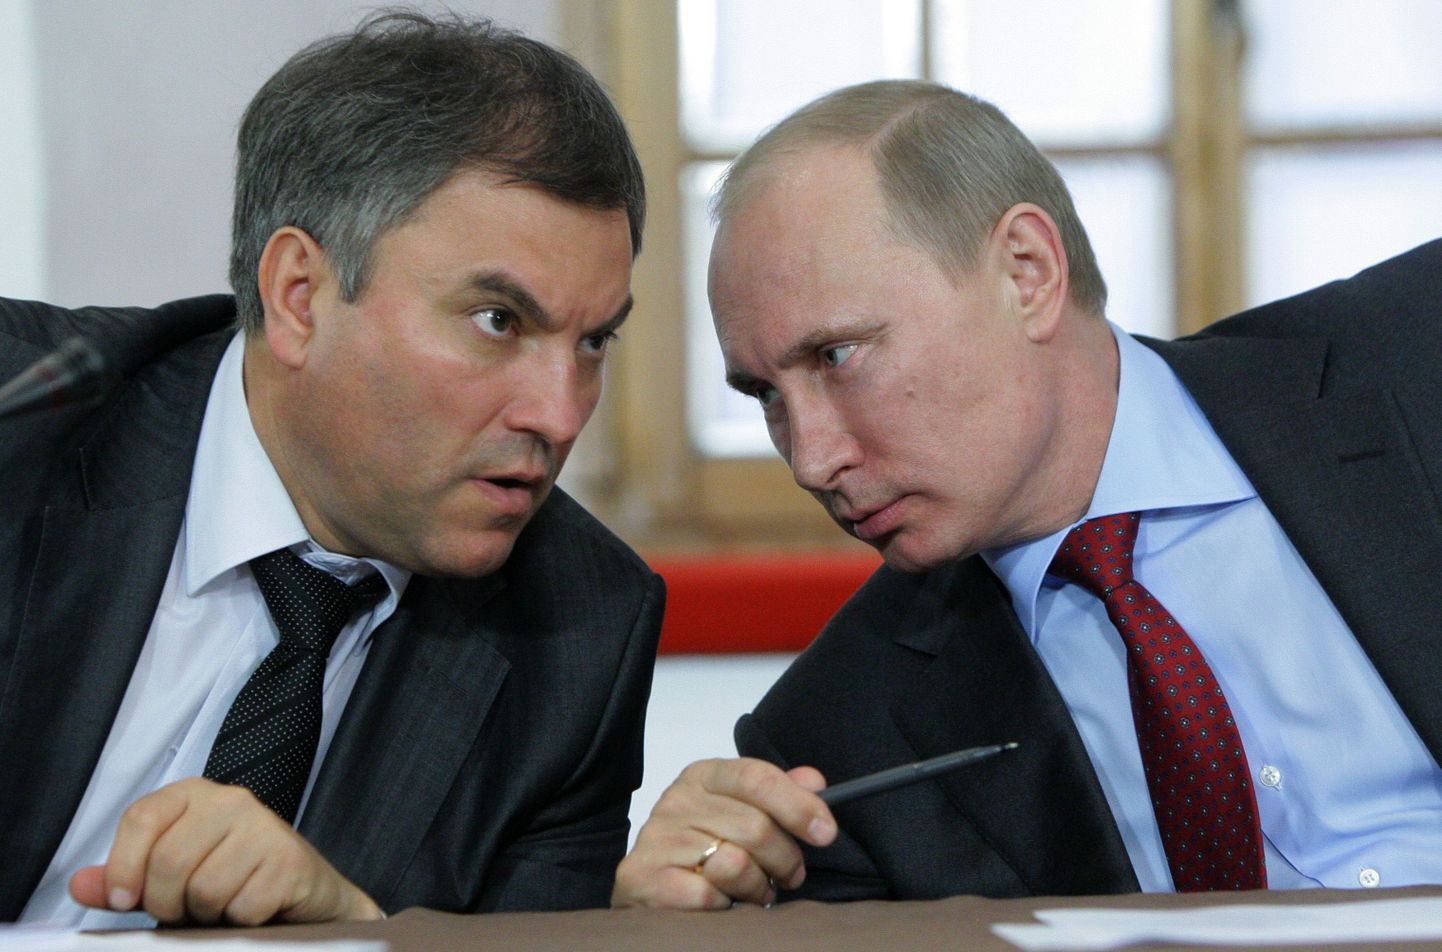 Venemaa riigiduuma esimees Vjatšeslav Volodin ja Vladimir Putin 2011. aastal, kui Volodin oli veel presidendi administratsiooni personaliülema asetäitja.